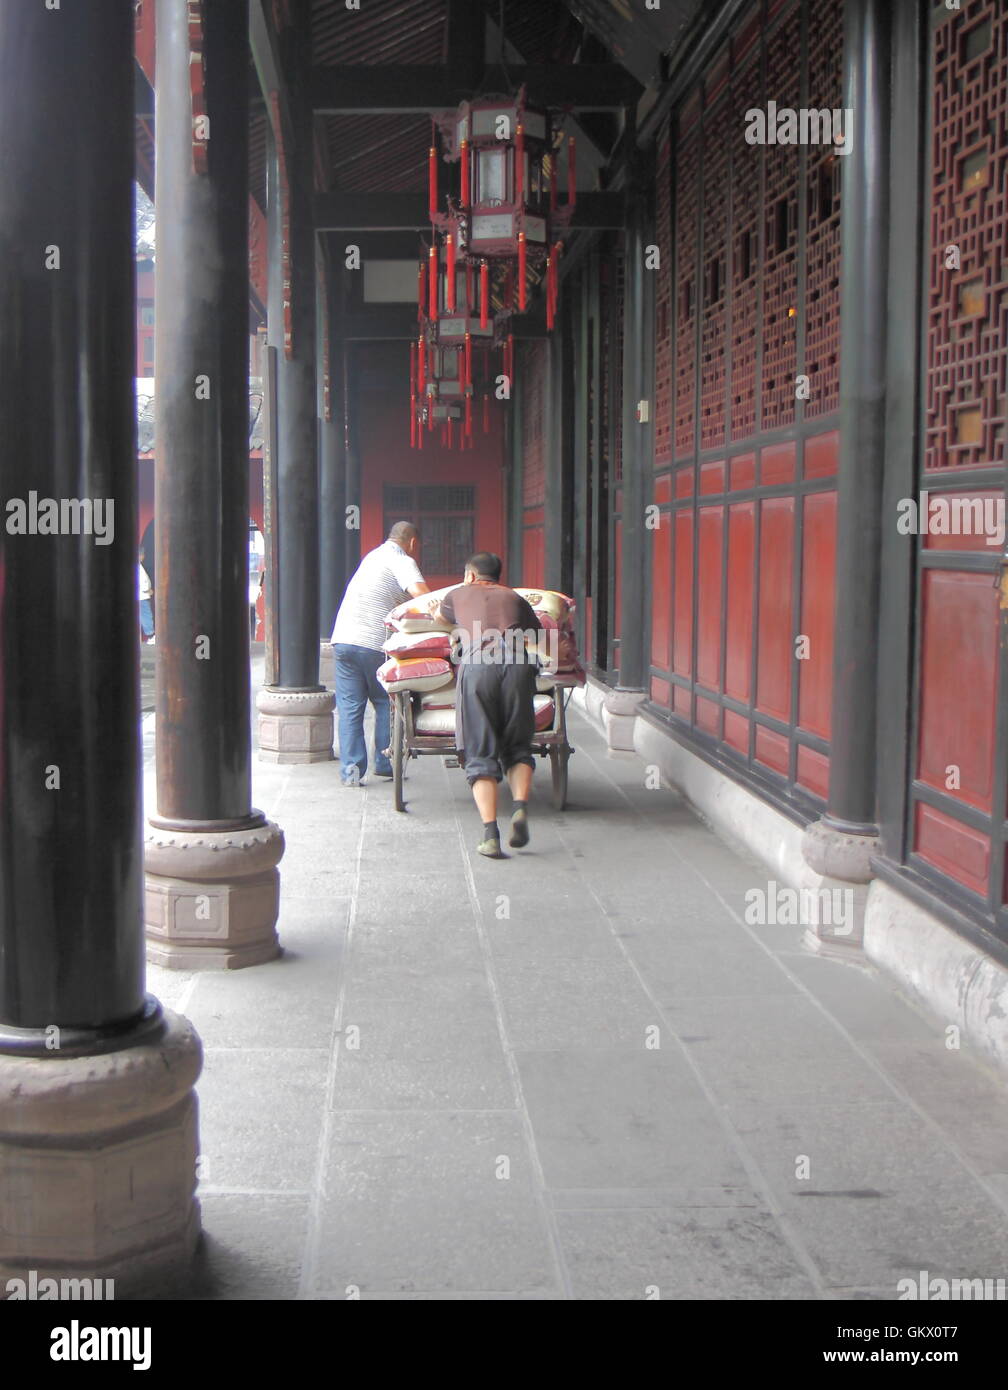 Menschen liefern Wenshu Kloster in Chengdu China Reis. Stockfoto